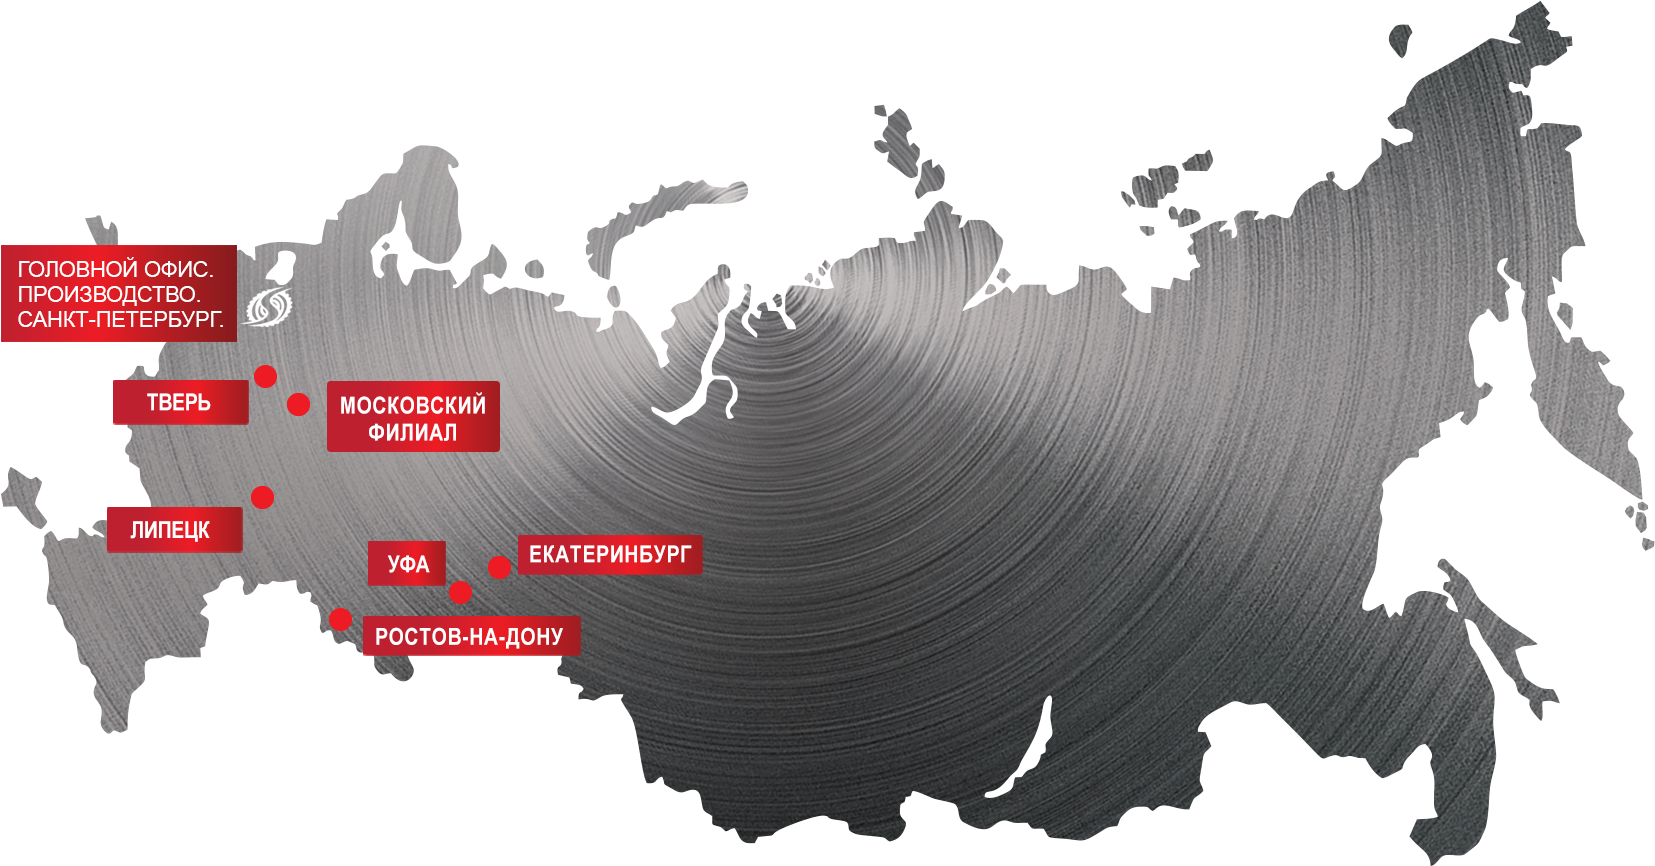 карта представителей смагреста в регионах россии